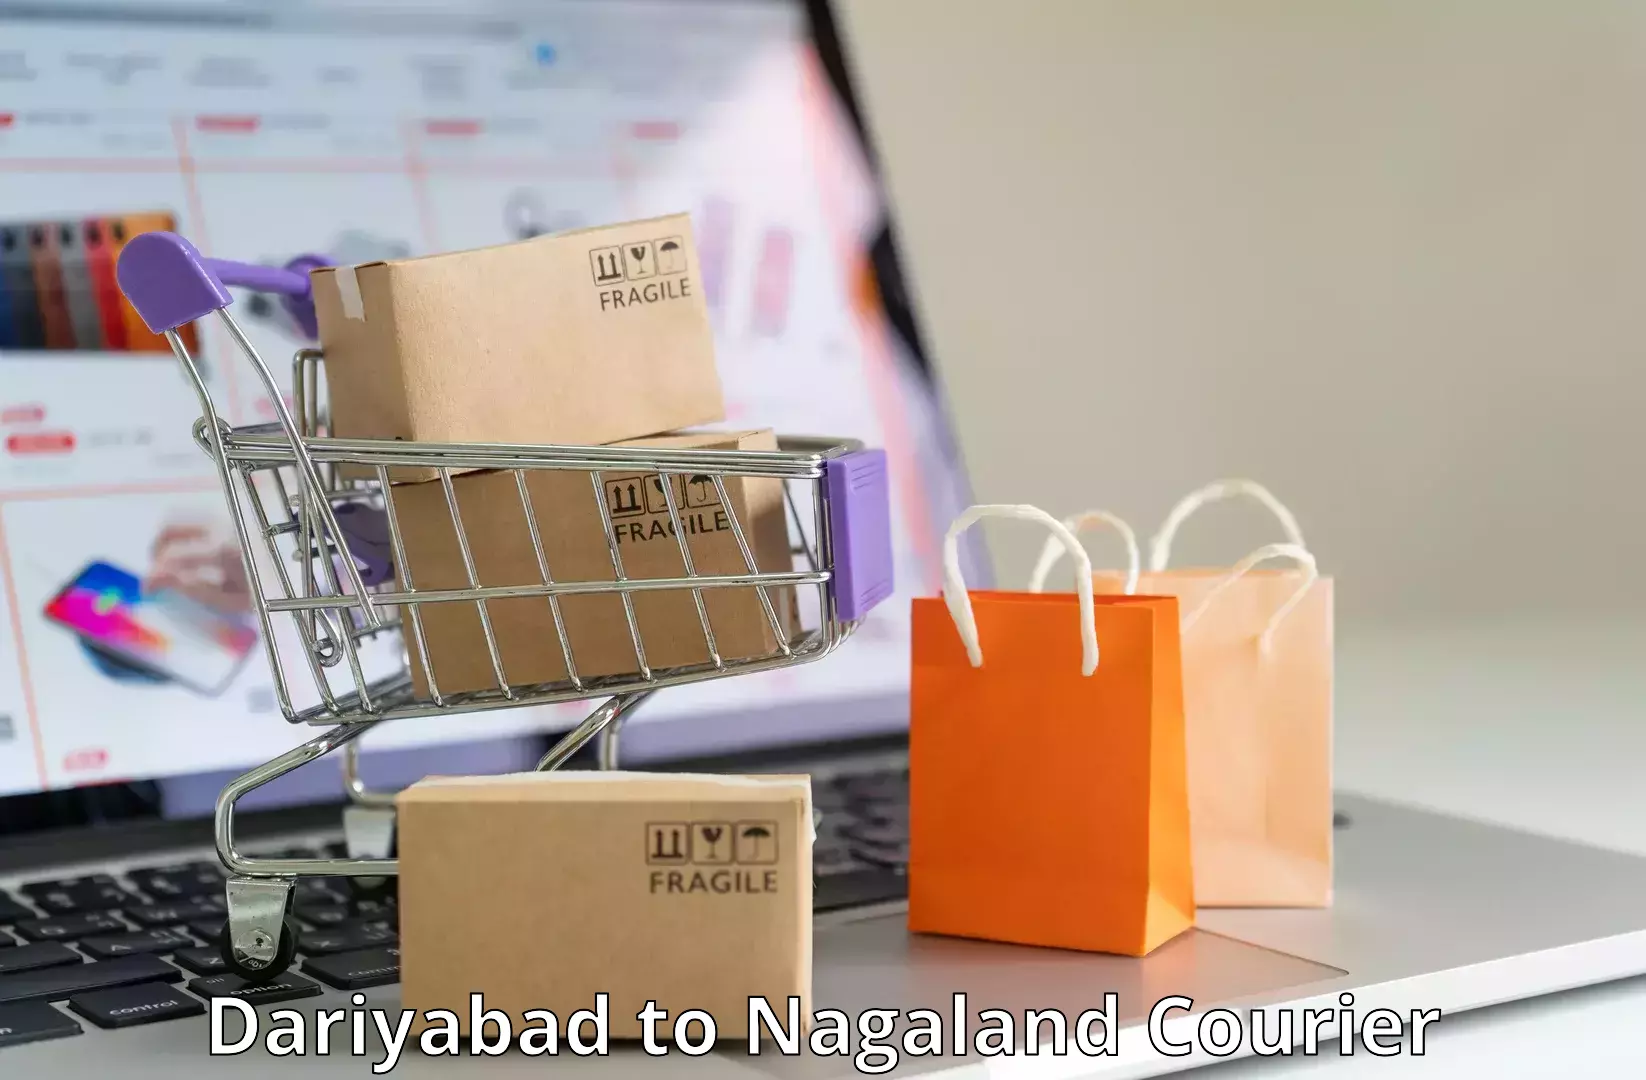 Scalable shipping solutions Dariyabad to NIT Nagaland